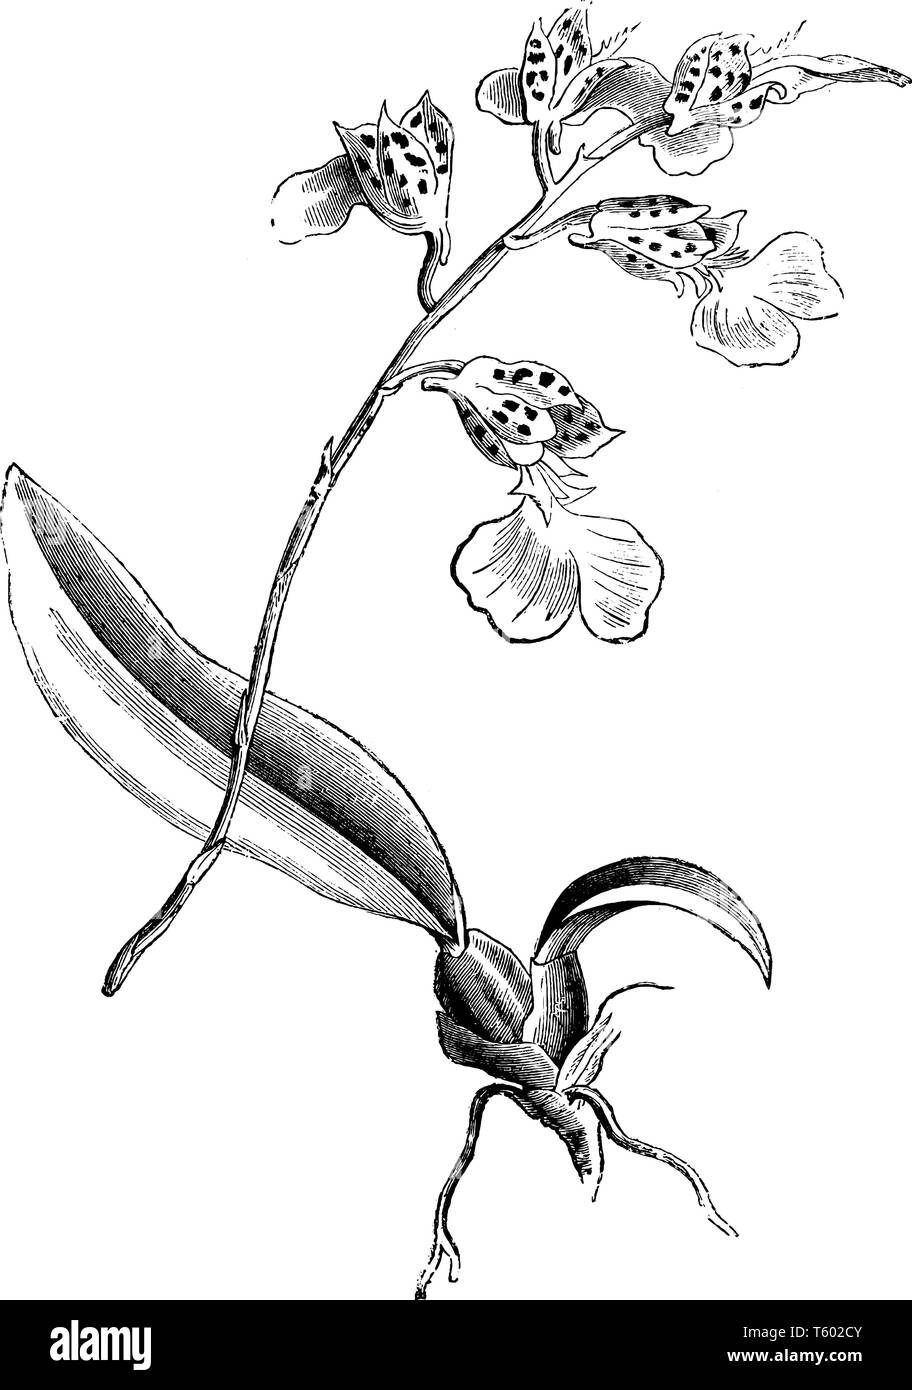 La figura mostra il ramo di Burlingtonia Decora pianta. Impianto è nativo di America tropicale dal Messico meridionale e il Windward Islands South per sarge Illustrazione Vettoriale